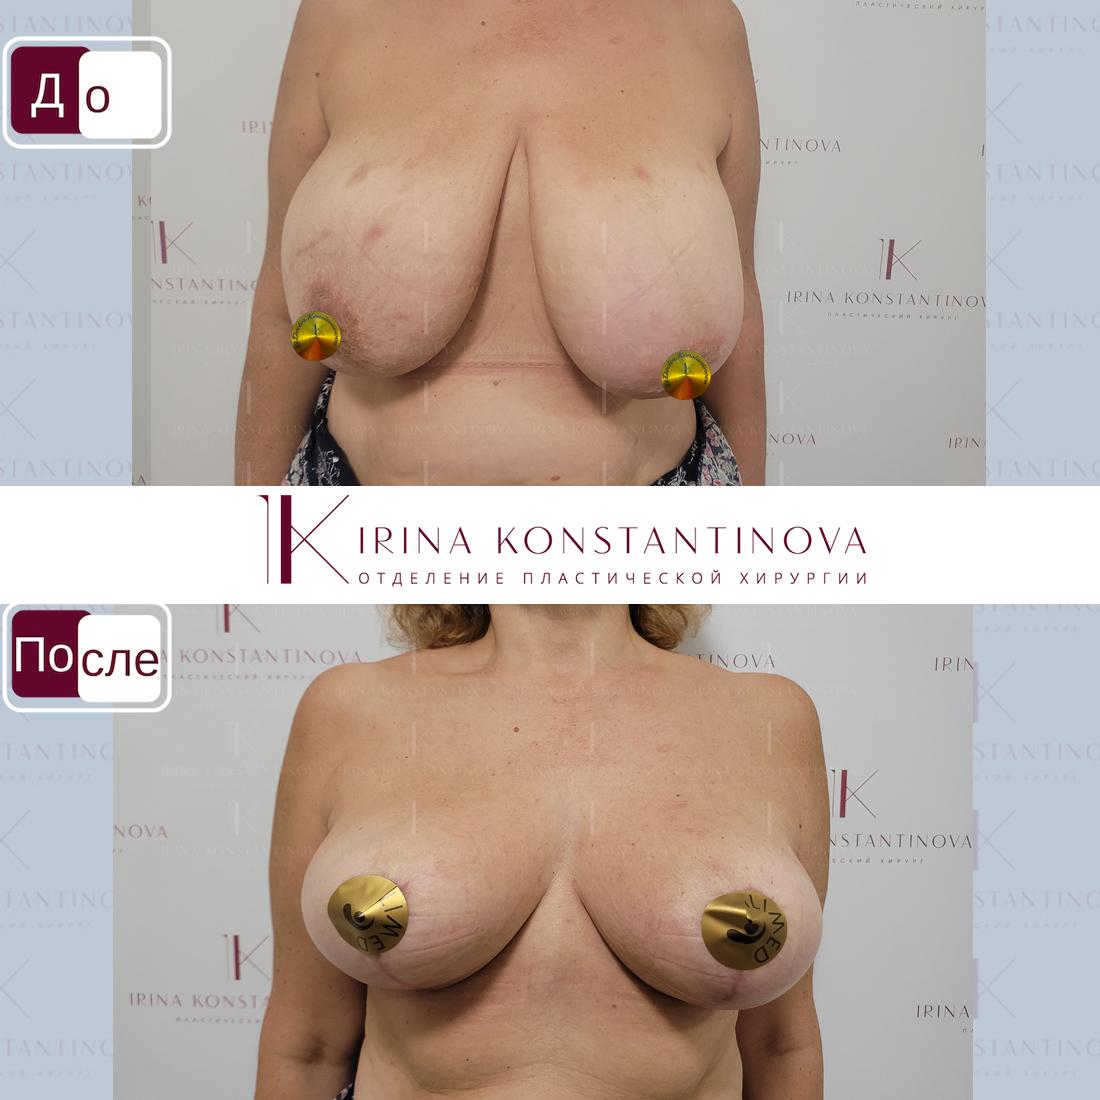 как называется операция по уменьшению груди у женщин фото 17